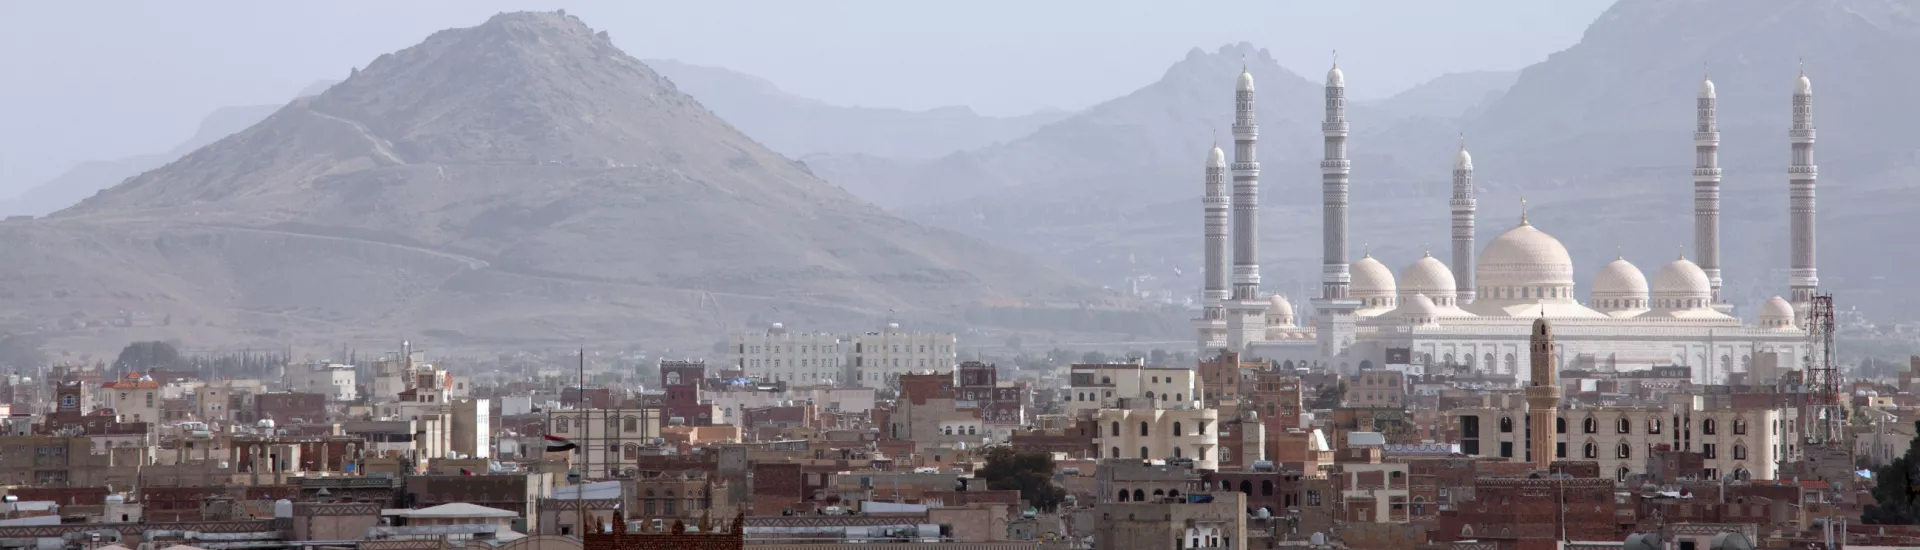 Al-Saleh Mosque, Yemen